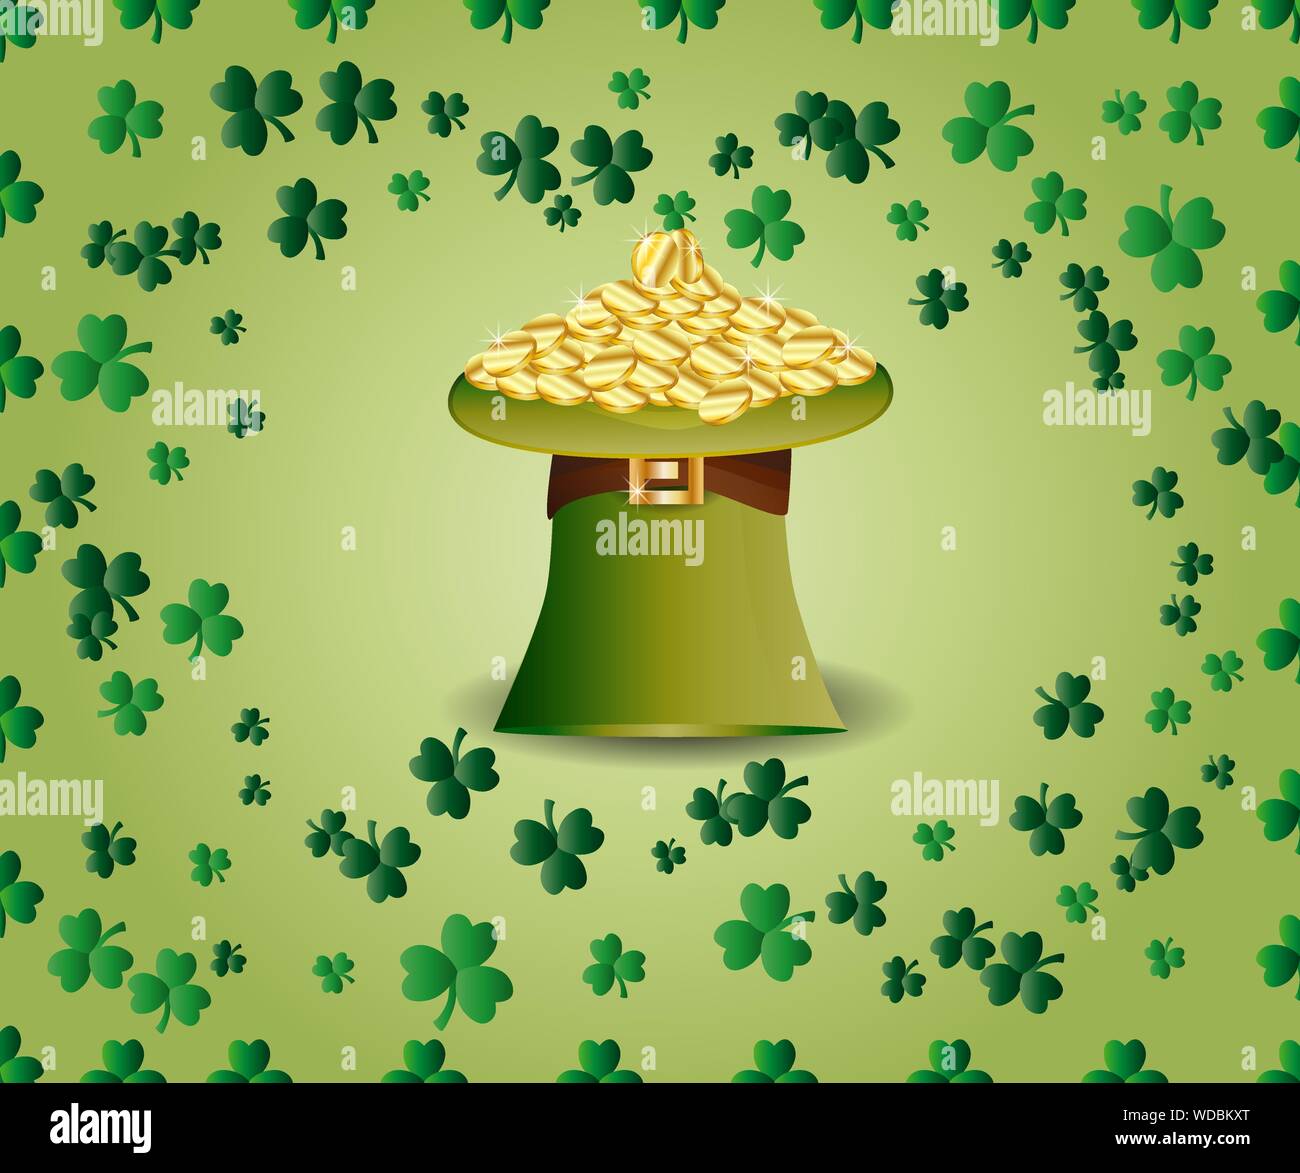 Saint Patrick's Day Greeting card avec un chapeau vert plein de pièces d'or, les feuilles de trèfle vert parkled Illustration de Vecteur